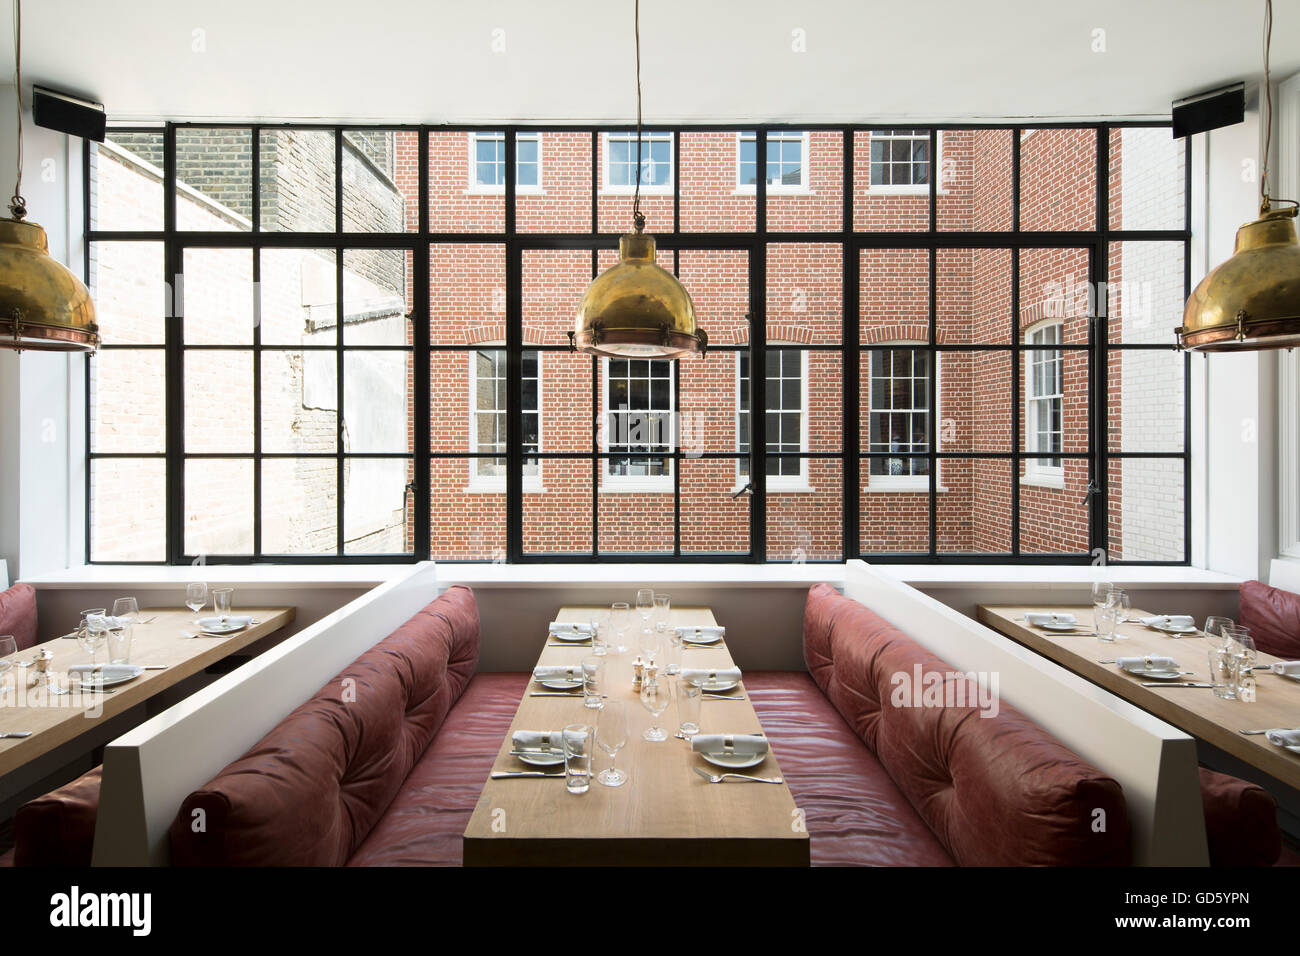 Avis de restaurant. 76 Dean Street, London, United Kingdom. Architecte : SODA., 2016. Banque D'Images